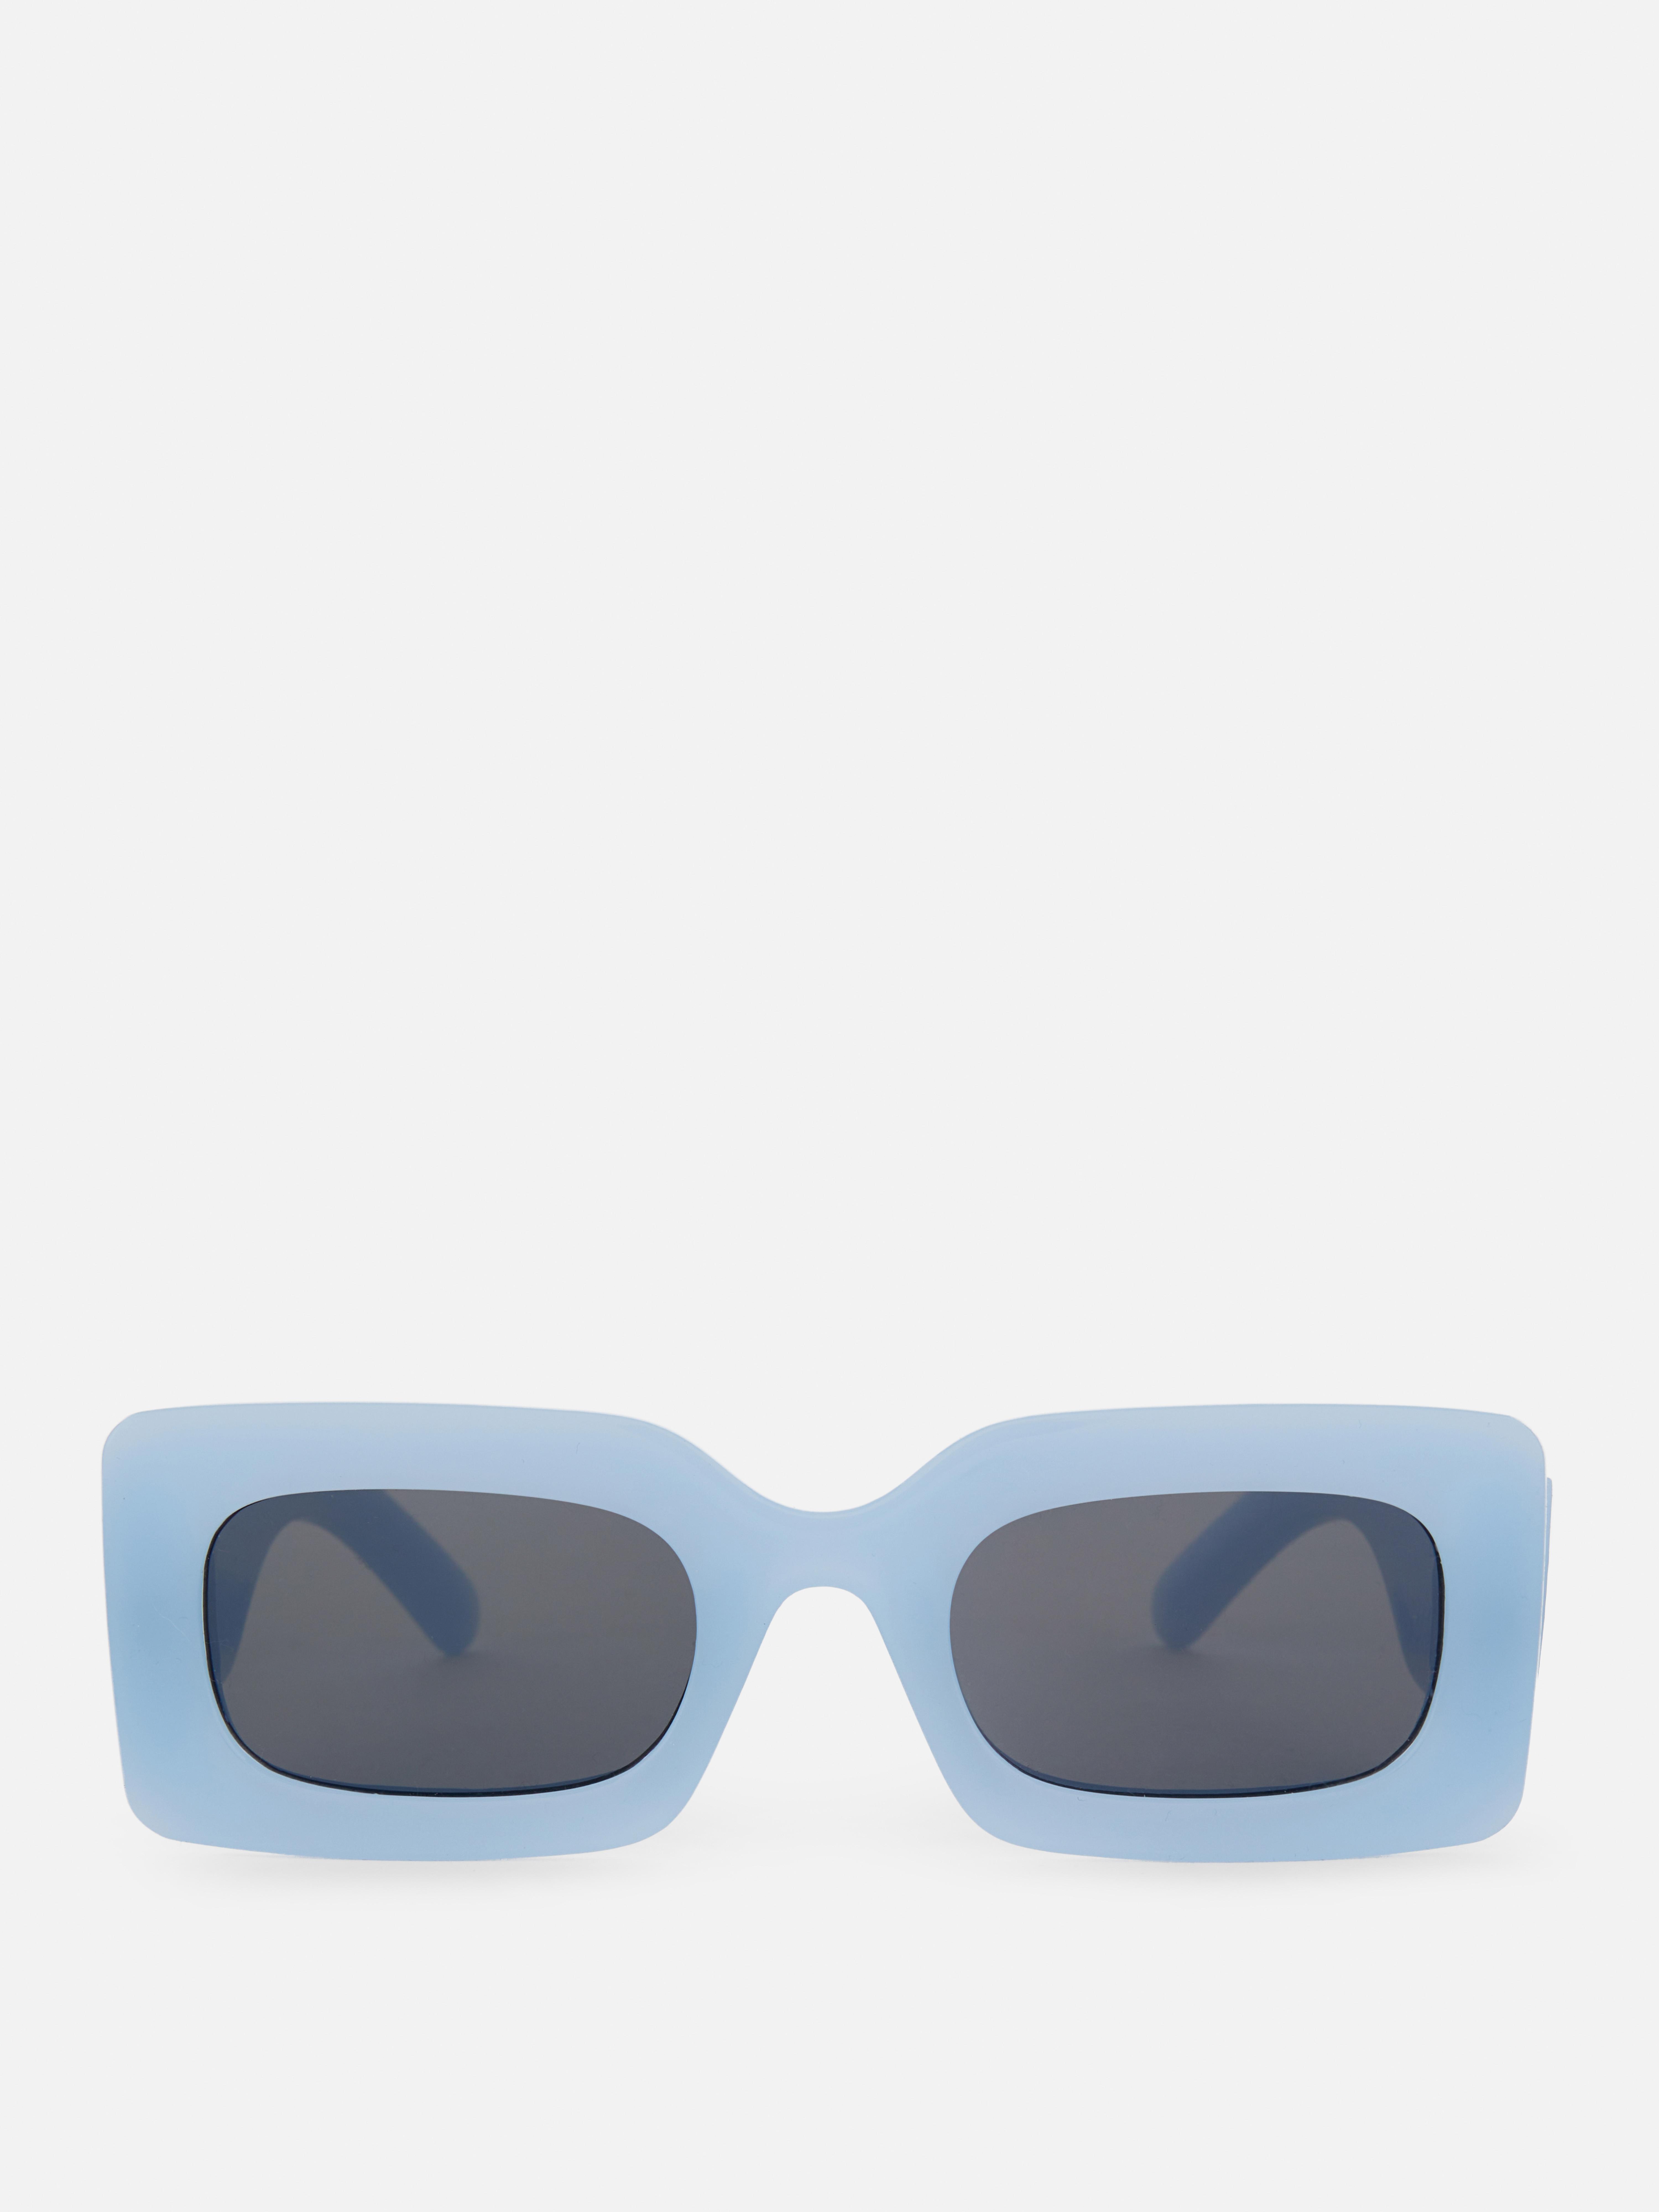 Prostokątne okulary przeciwsłoneczne w grubej oprawce